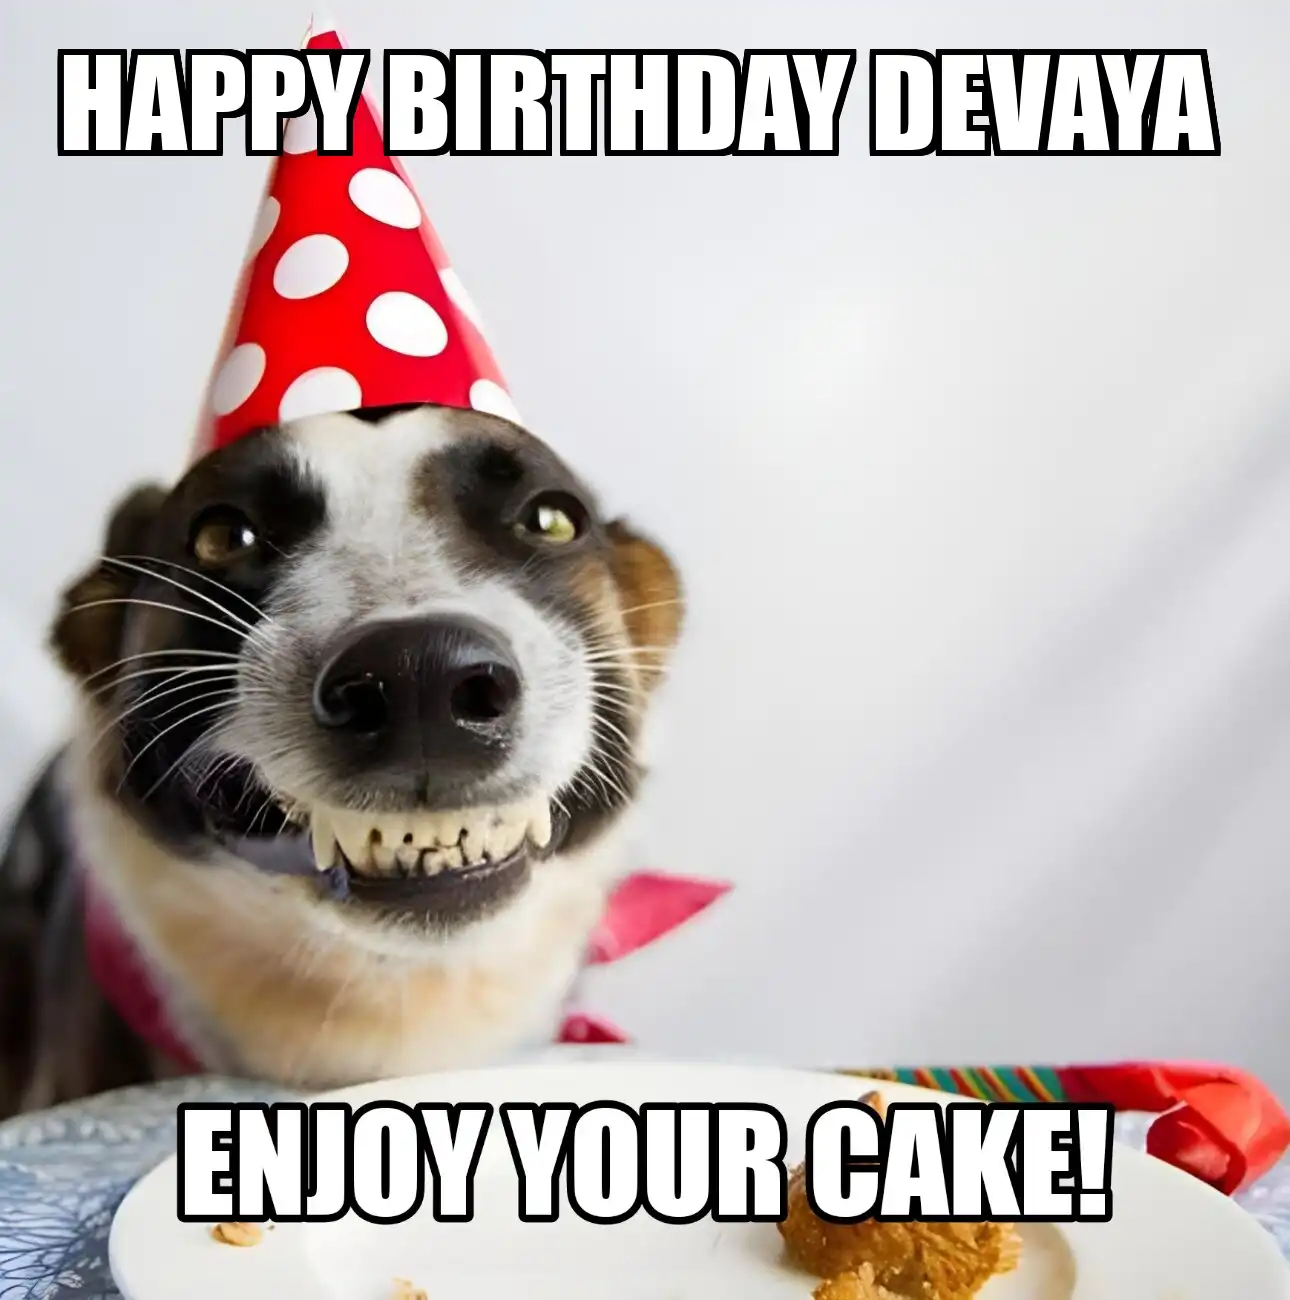 Happy Birthday Devaya Enjoy Your Cake Dog Meme